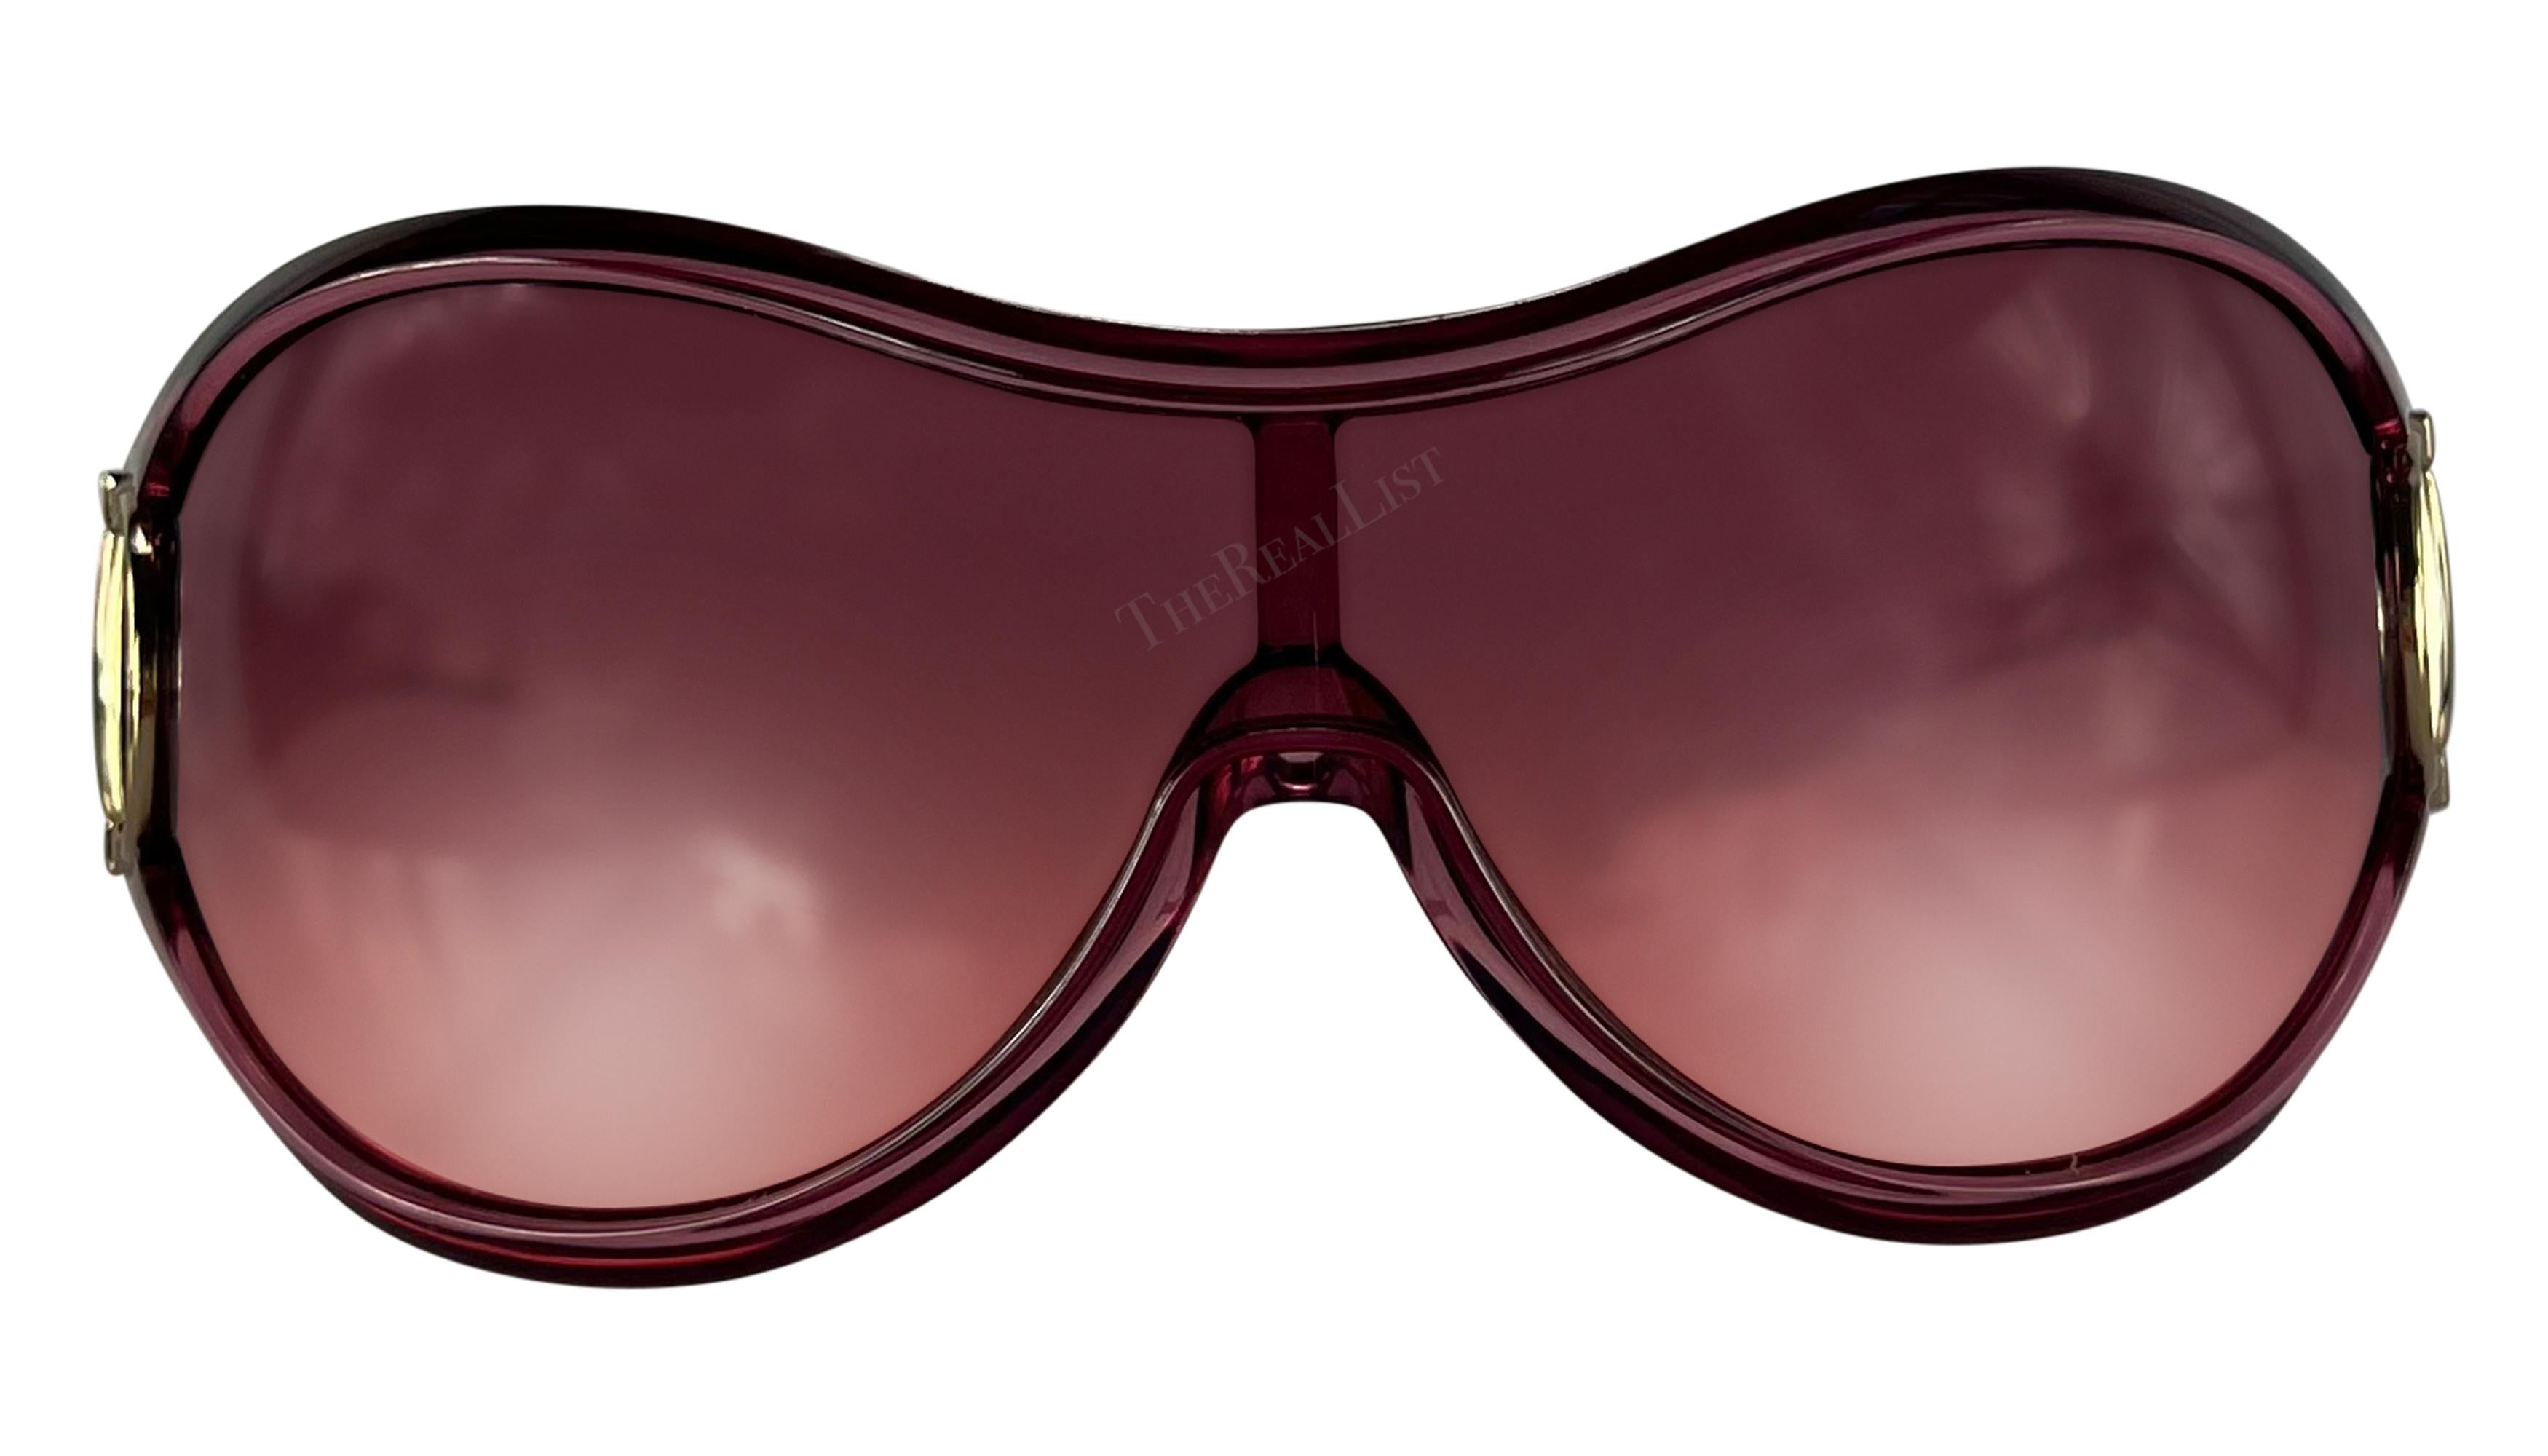 Voici une fabuleuse paire de lunettes de soleil Gucci rose clair. Datant du milieu des années 2000, ces lunettes de soleil surdimensionnées sont dotées d'une monture rose clair transparente, d'un verre rose et d'accents en métal argenté en forme de